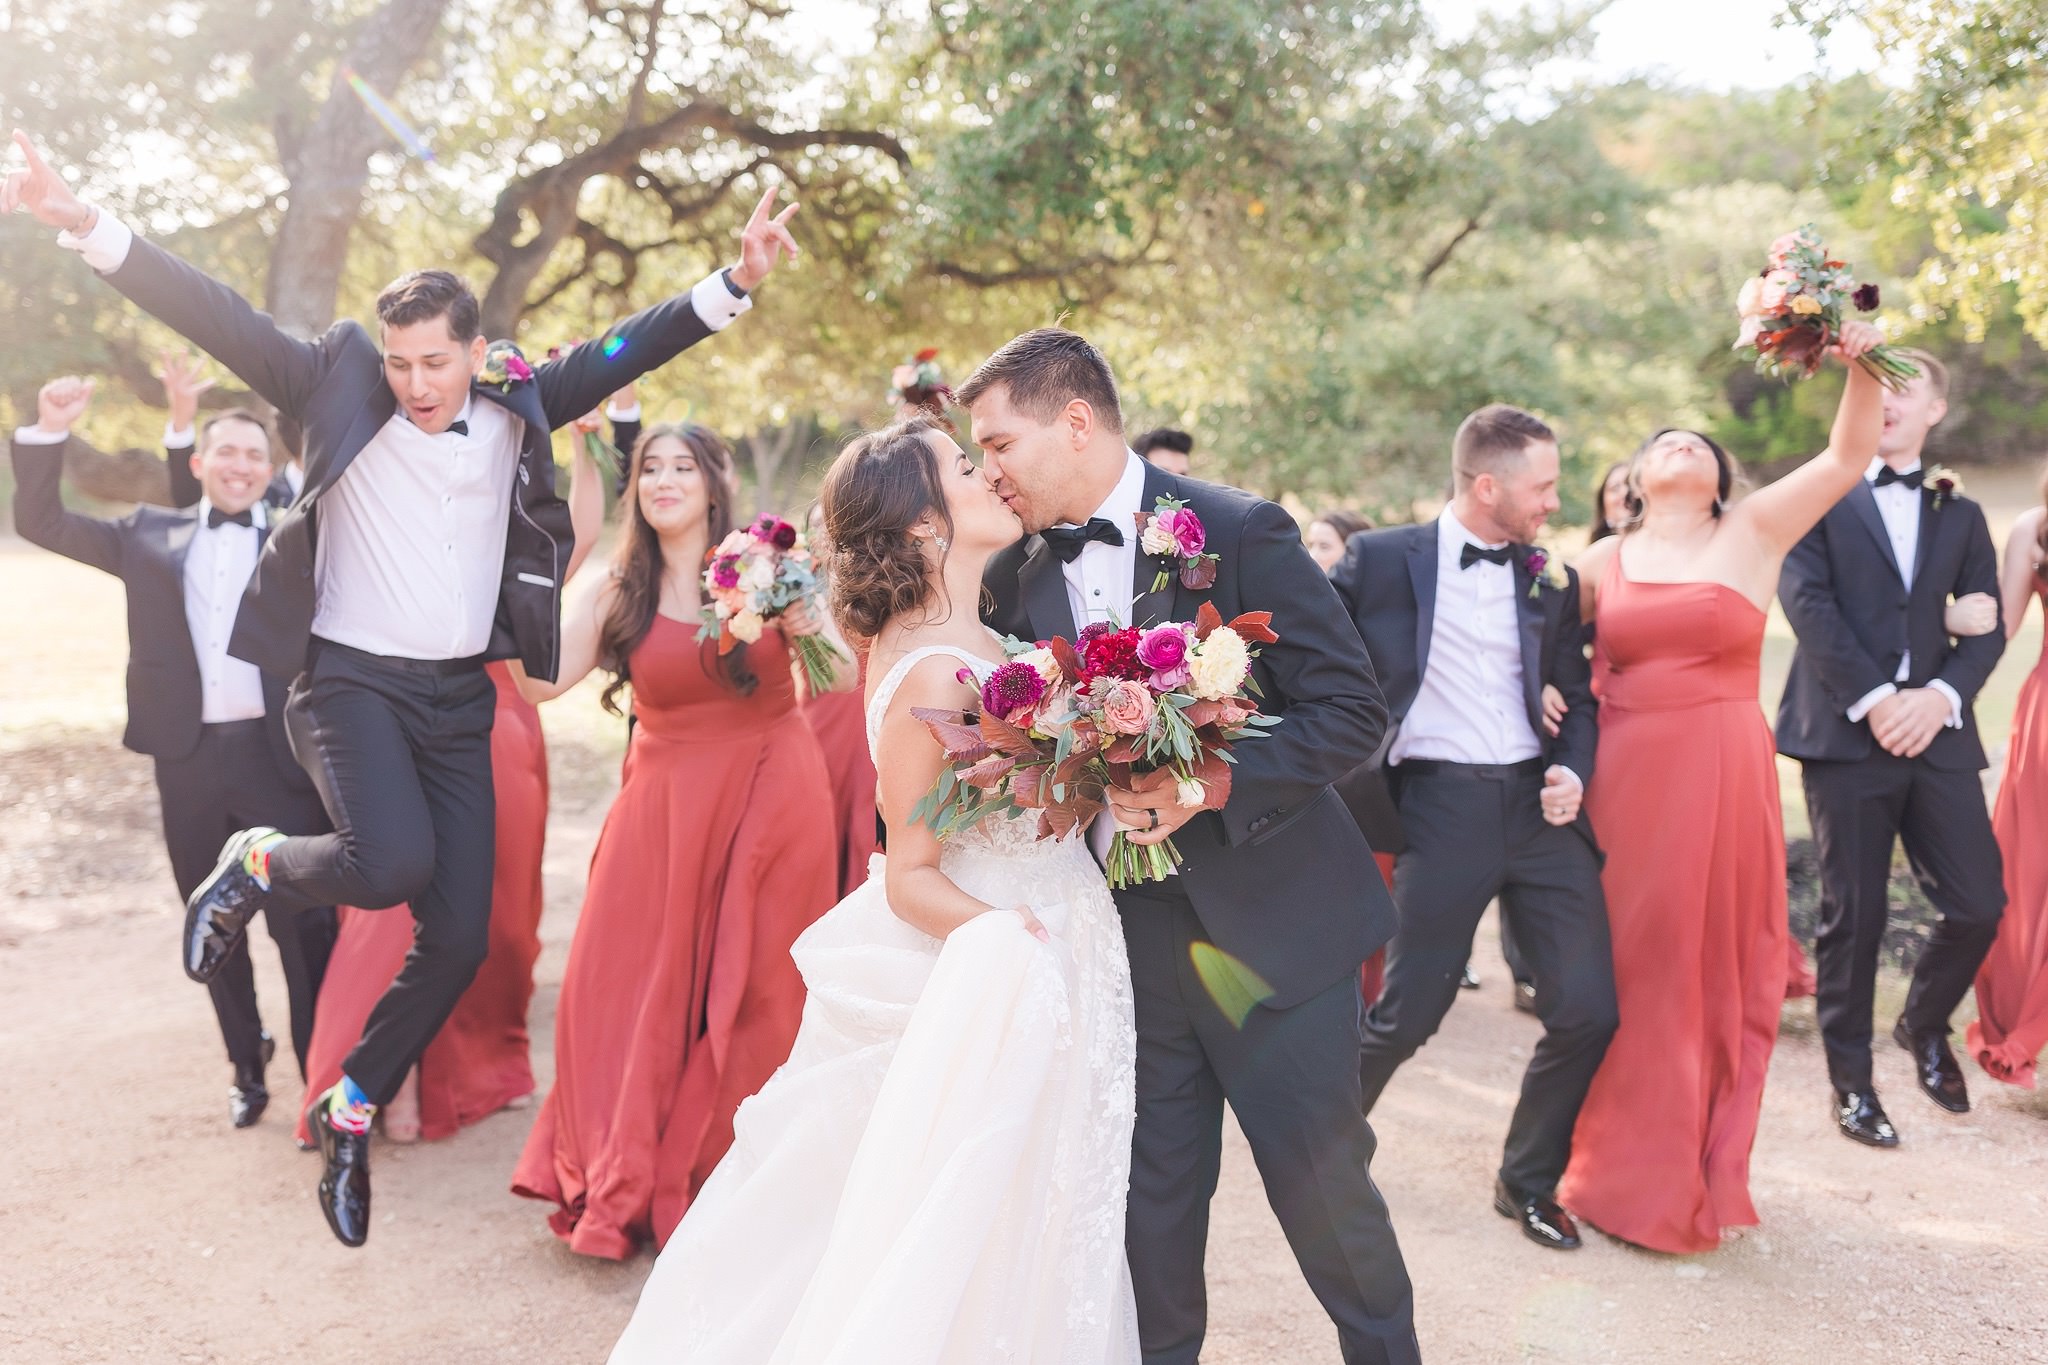 A Rust & Mocha Wedding at St. Josephs Honeycreek and Kendall Point in Boerne, TX by Dawn Elizabeth Studios, San Antonio Wedding Photographer